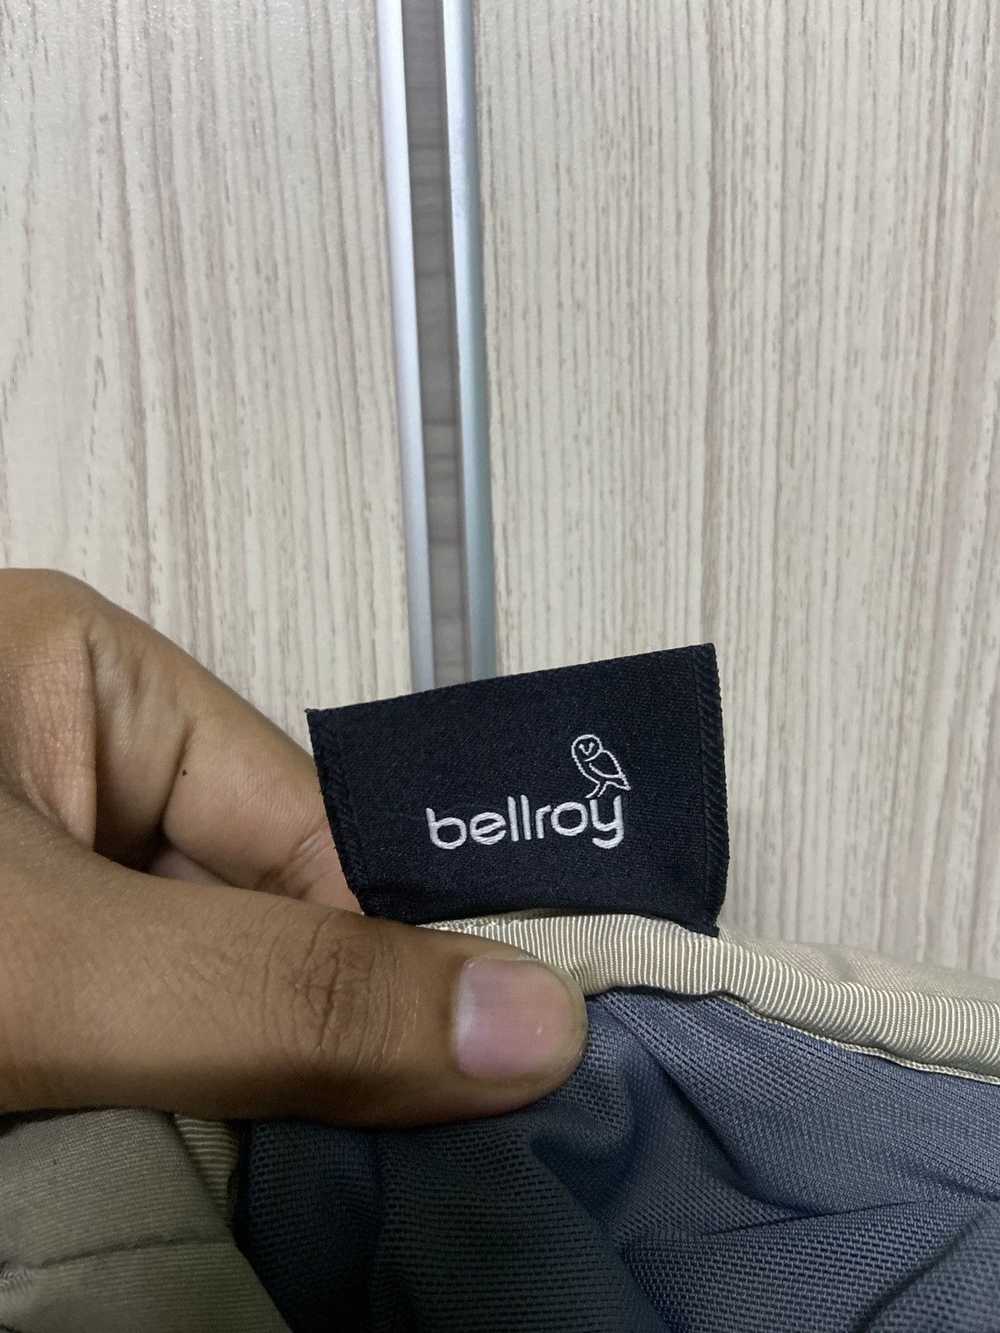 Bellroy Bellroy sling bag - image 4